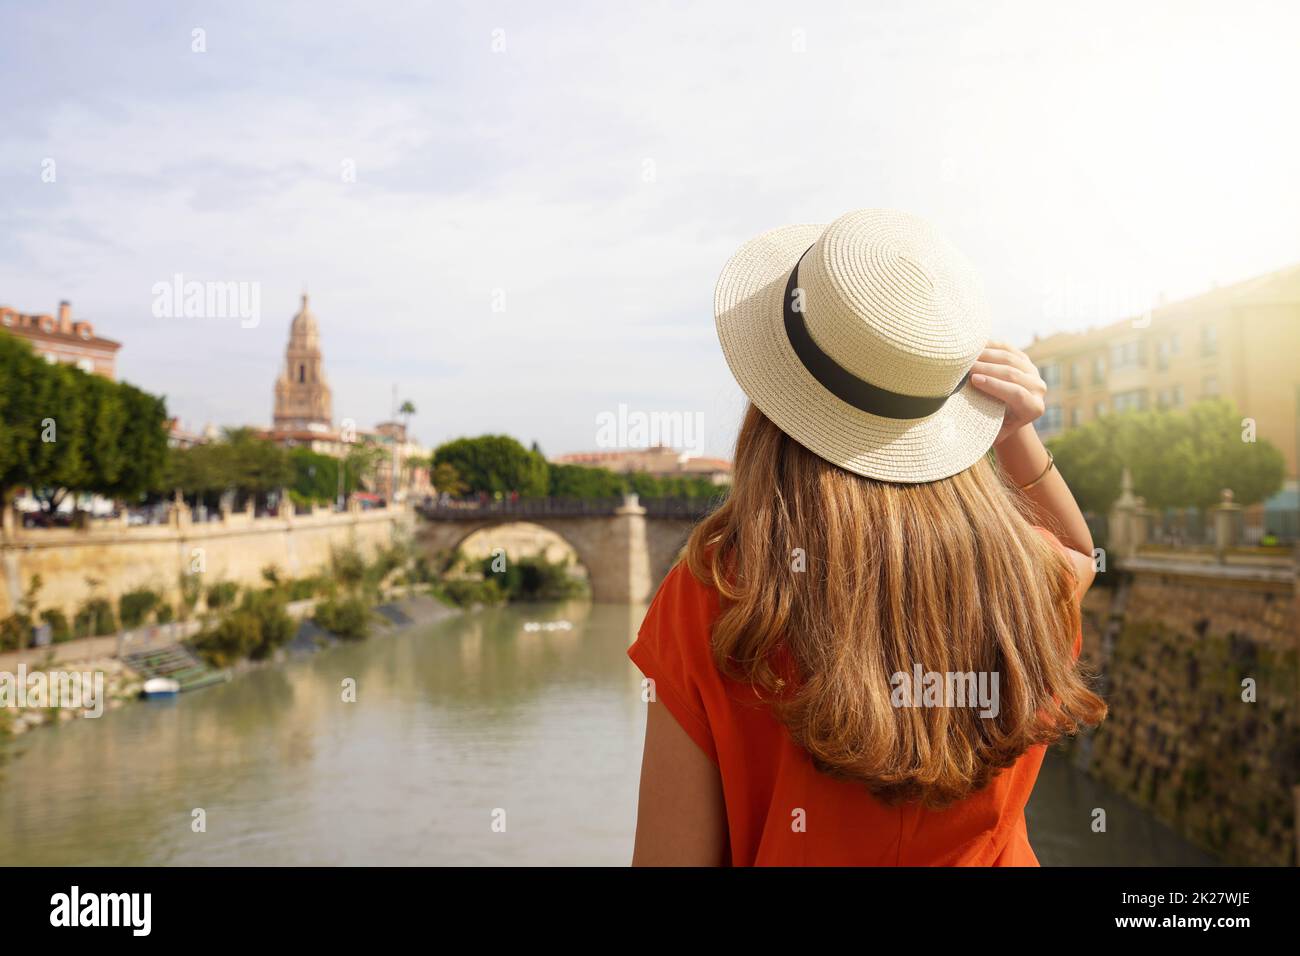 Besuch In Murcia, Spanien. Rückansicht eines touristischen Mädchens, das die Stadtlandschaft von Murcia mit der Puente Viejo Brücke und dem Glockenturm der Kathedrale, Spanien, genießt. Stockfoto